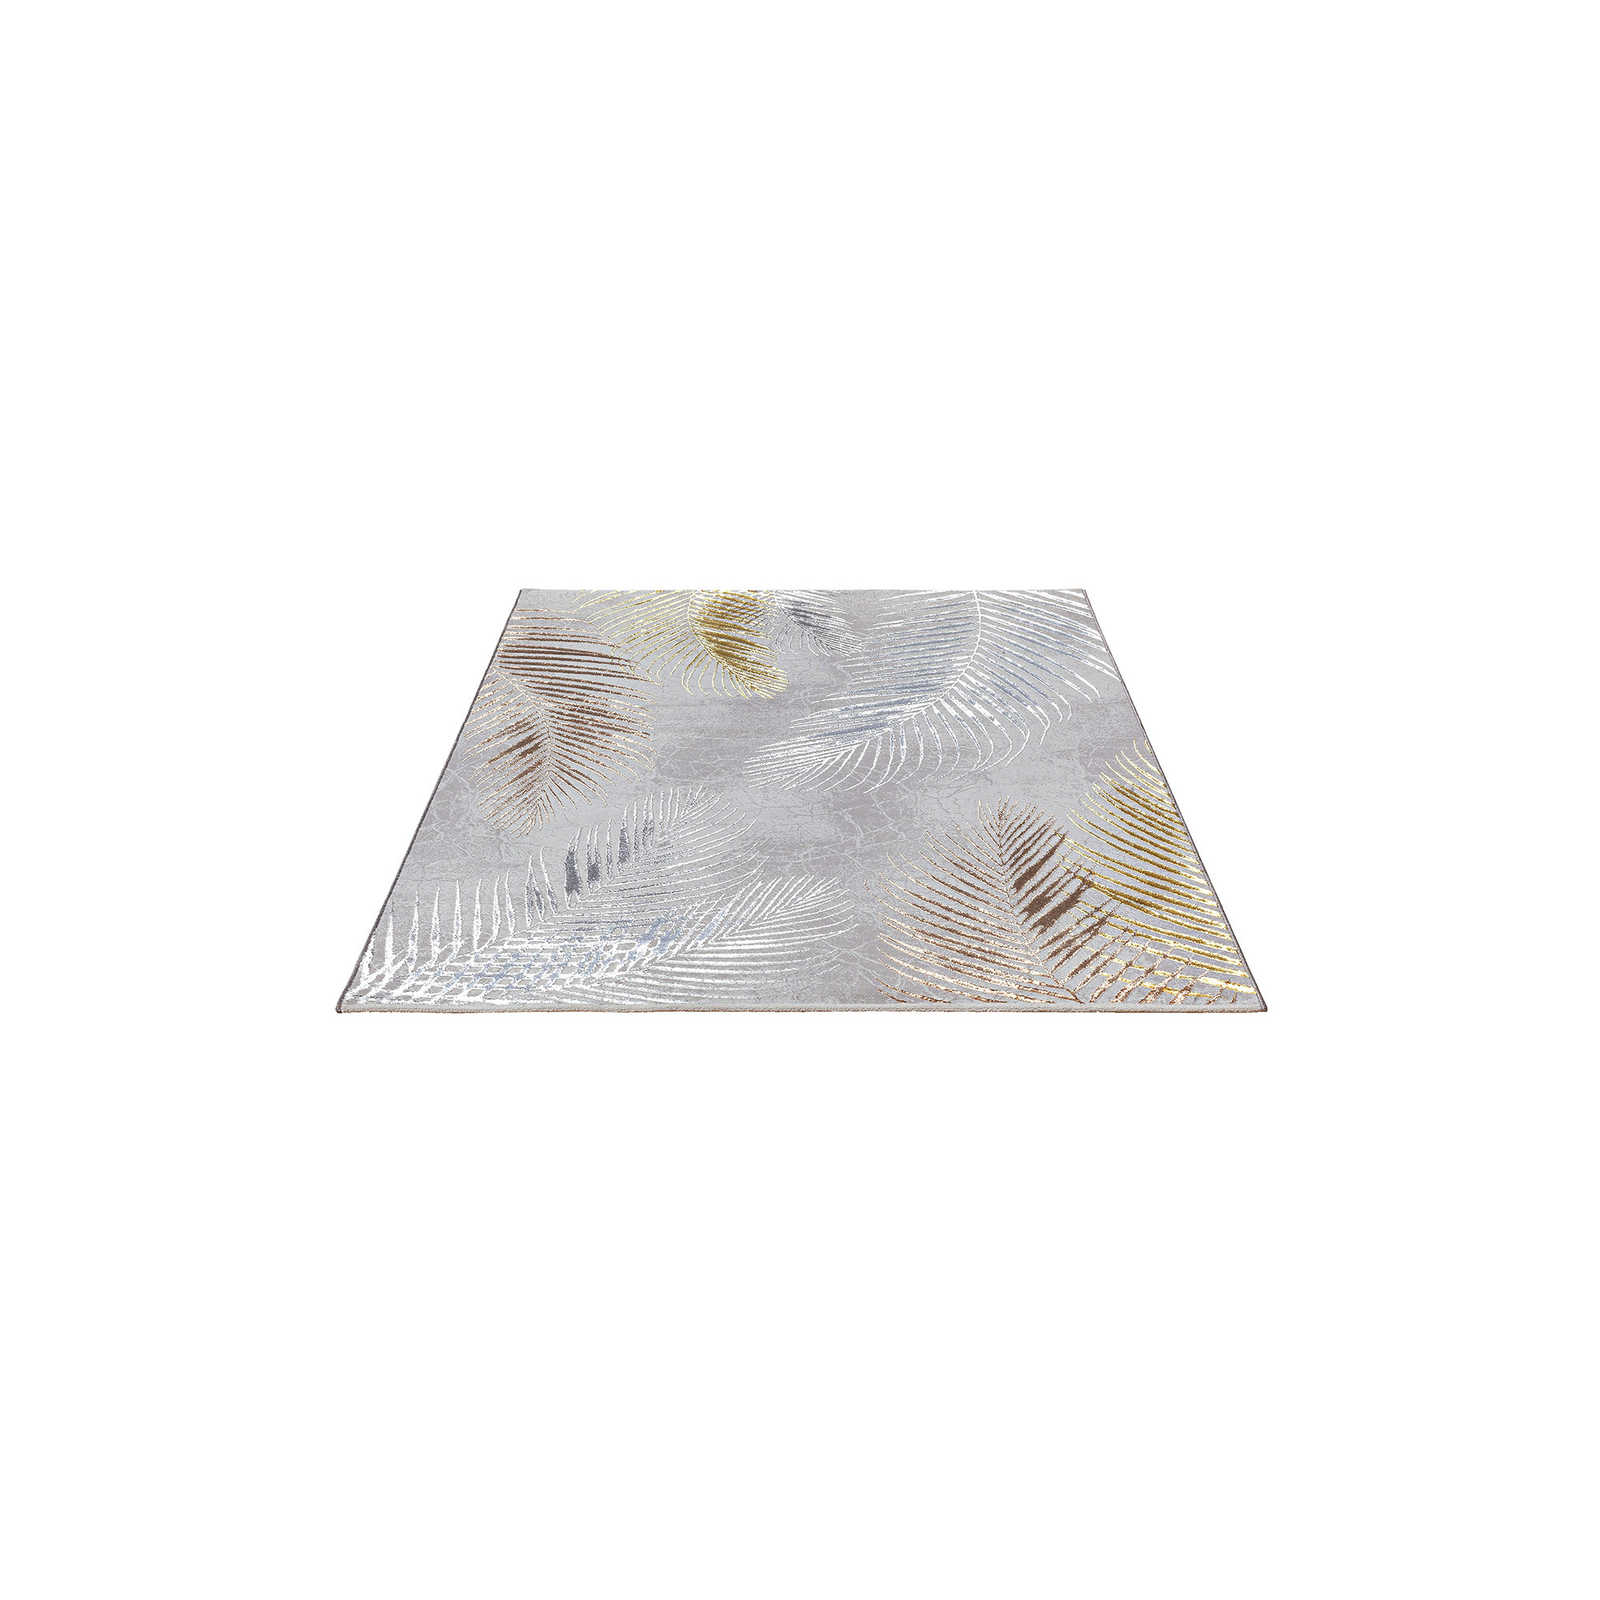 Knuffelzacht hoogpolig tapijt in grijs als loper - 200 x 140 cm
